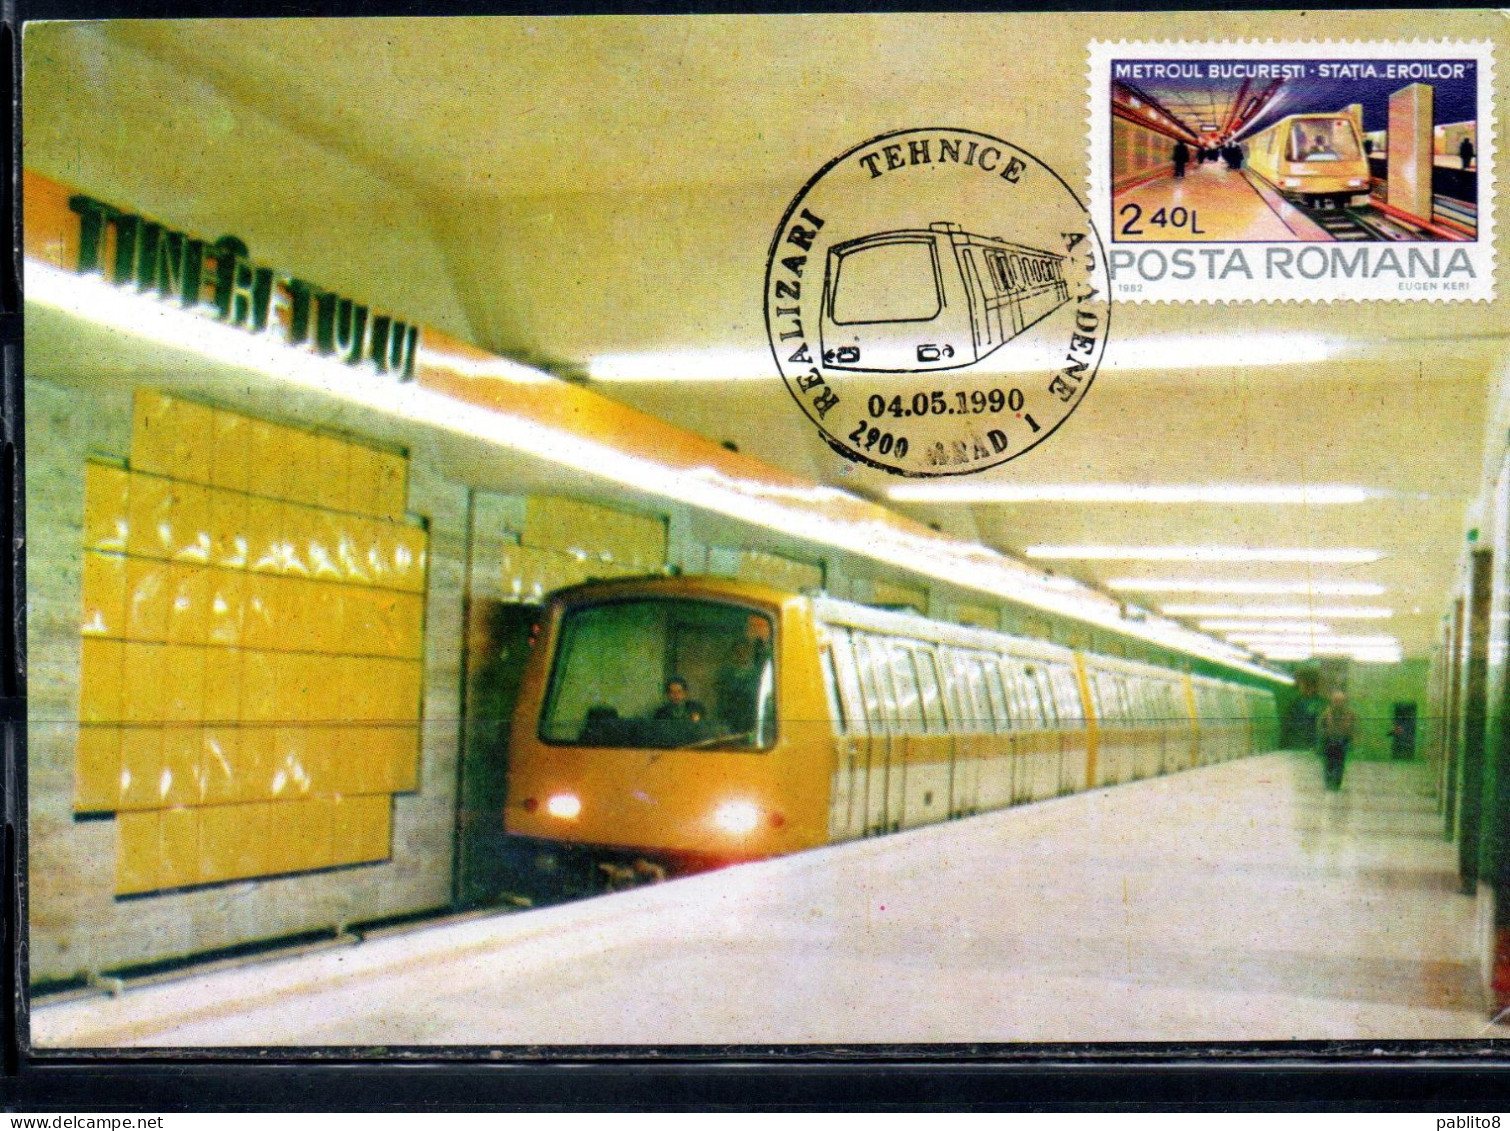 ROMANIA 1982 SUBWAY METROUL BUCARESTI METROPOLITANA 2.40L MAXI MAXIMUM CARD - Maximum Cards & Covers